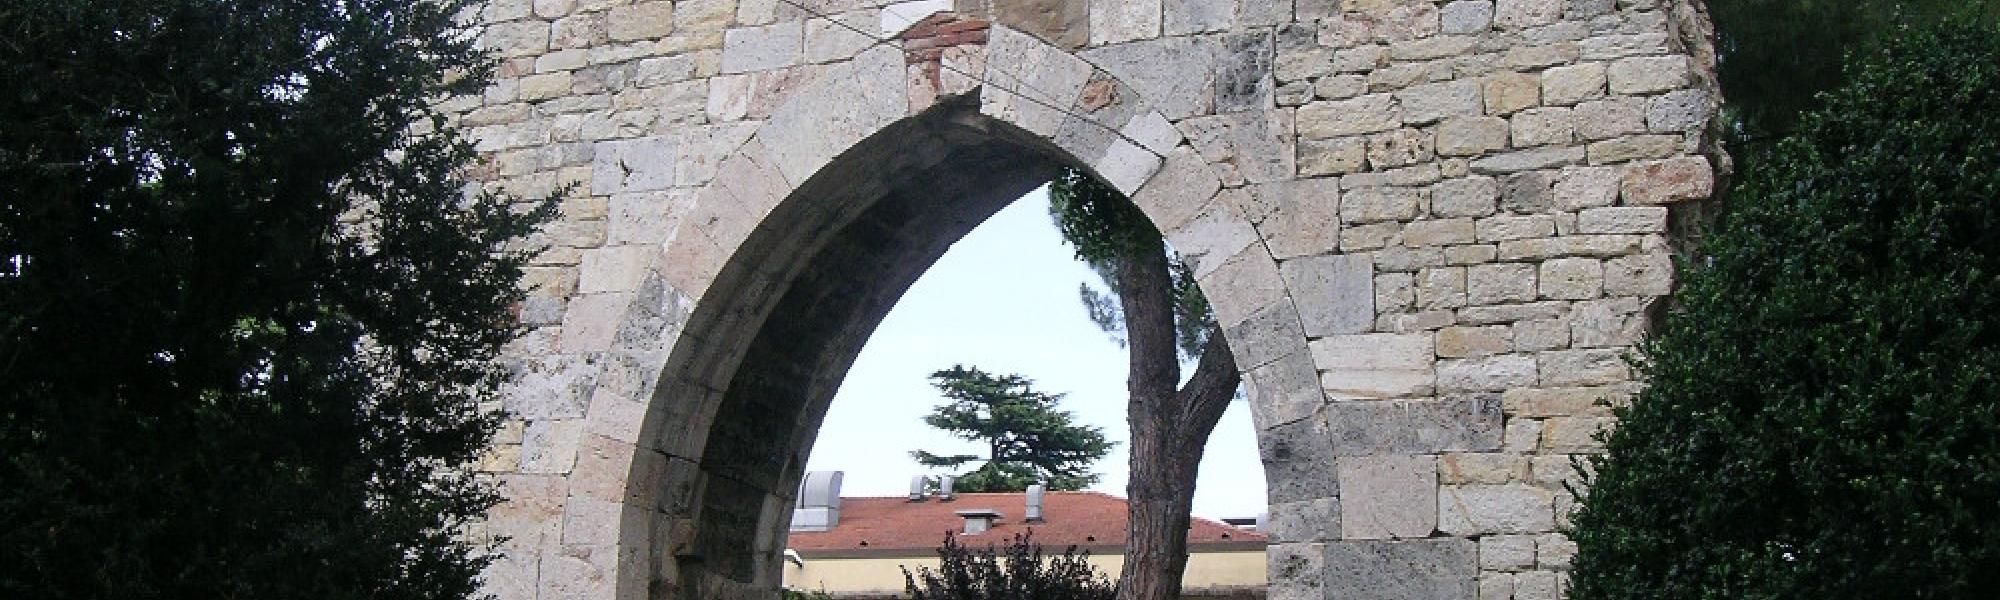 Porta Buoza - Complesso dell’Ospedale Santa Chiara (G. Gattiglia)